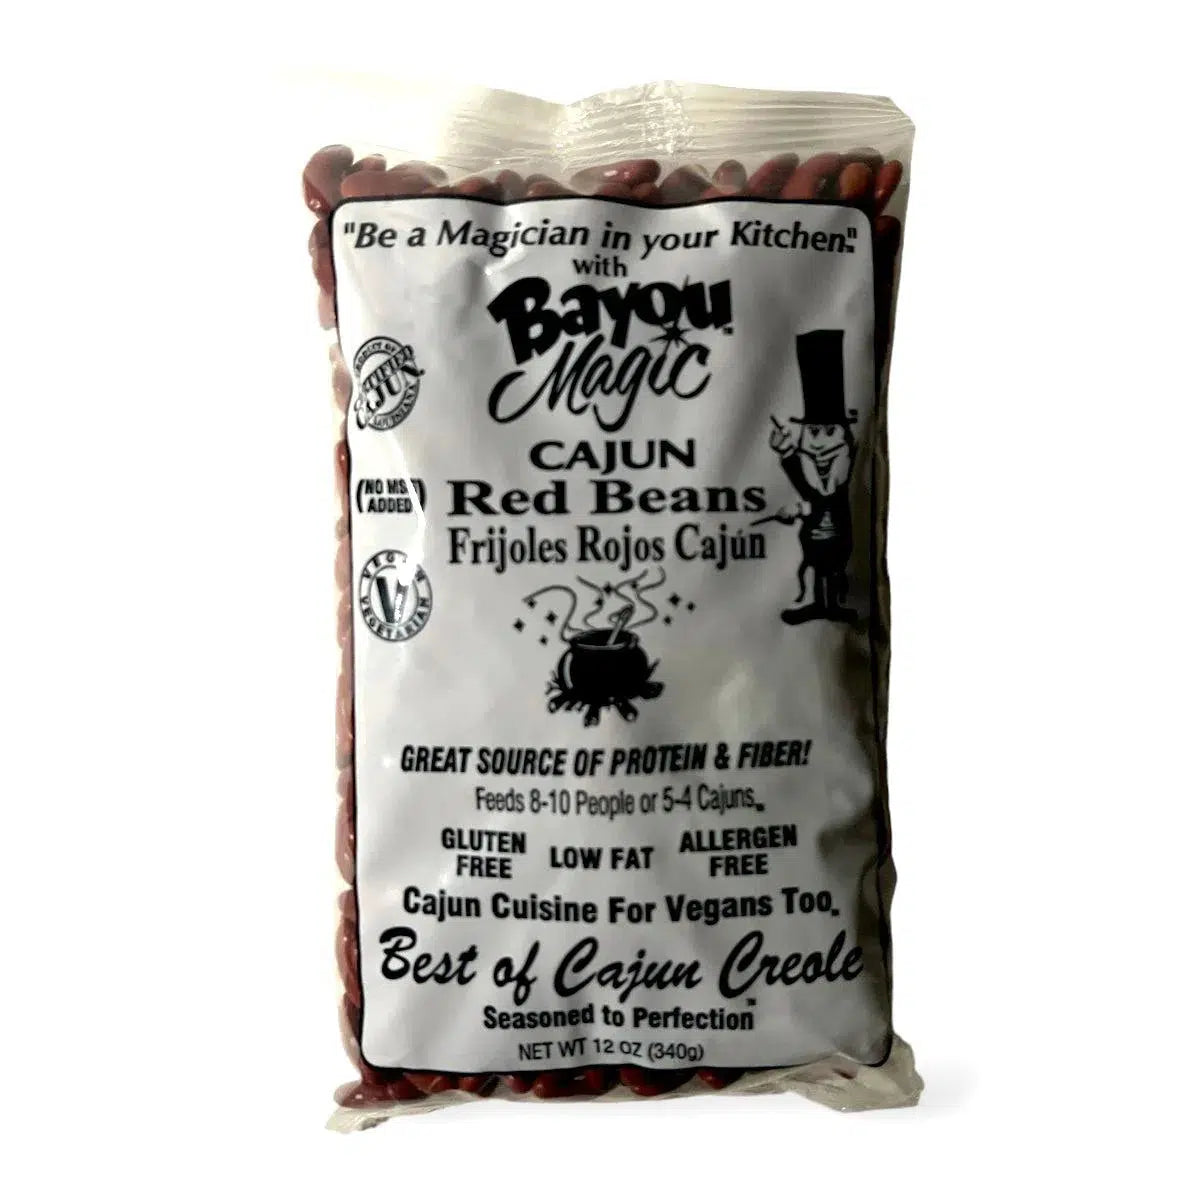 Bayou Magic Cajun Red Beans